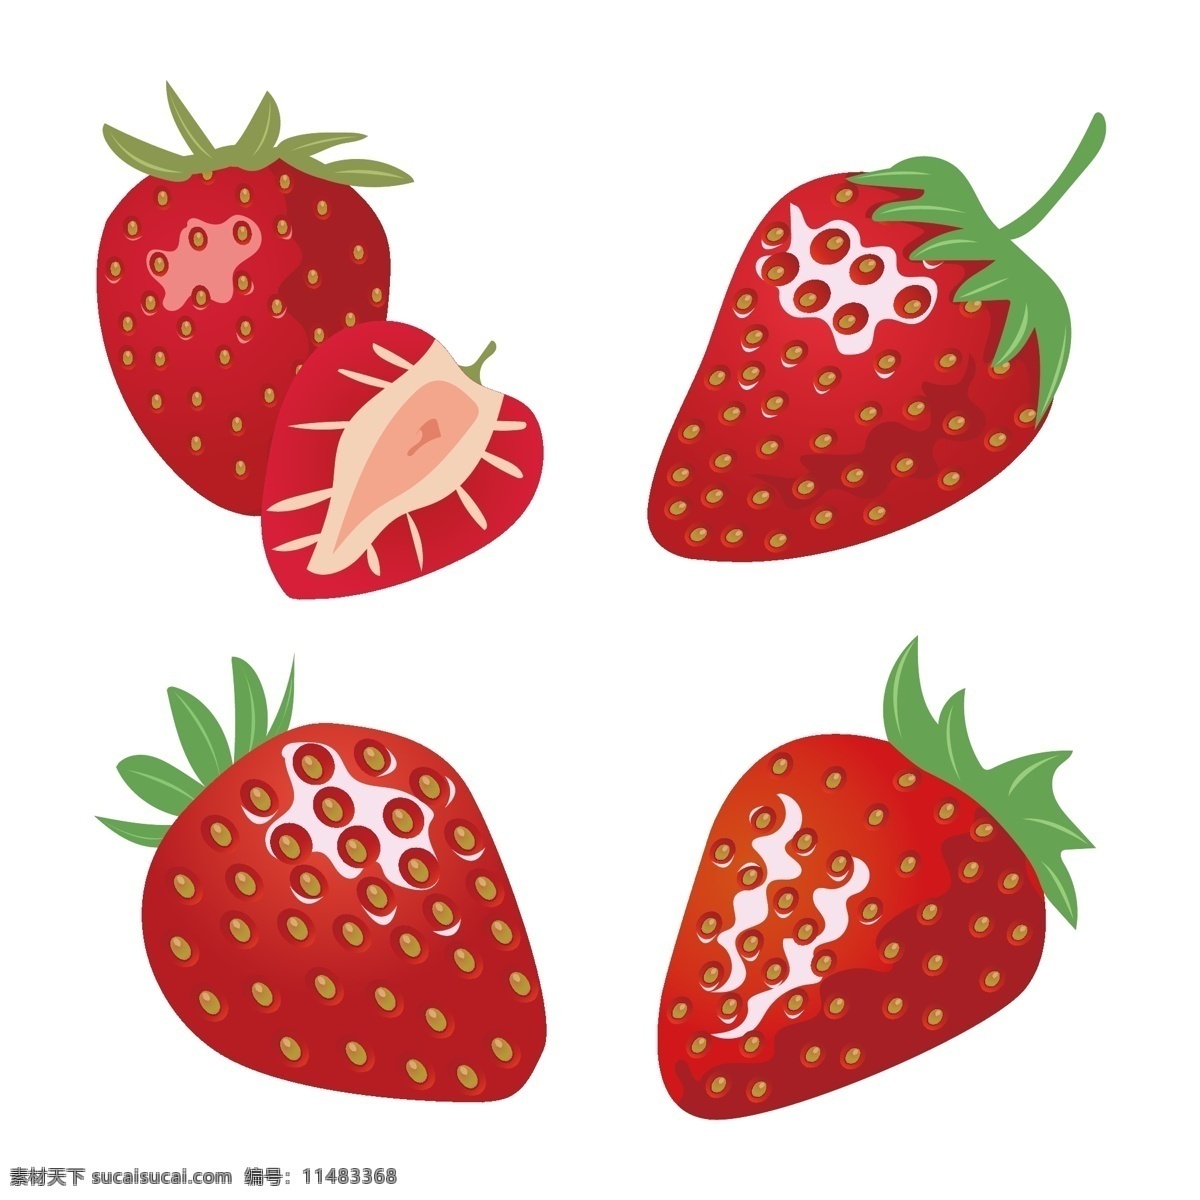 手绘草莓 卡通草莓 草莓口味 草莓味 草莓包装盒 草莓包装袋 草莓素材 水果 草莓 草莓汁 草莓干 新鲜草莓 失量素材